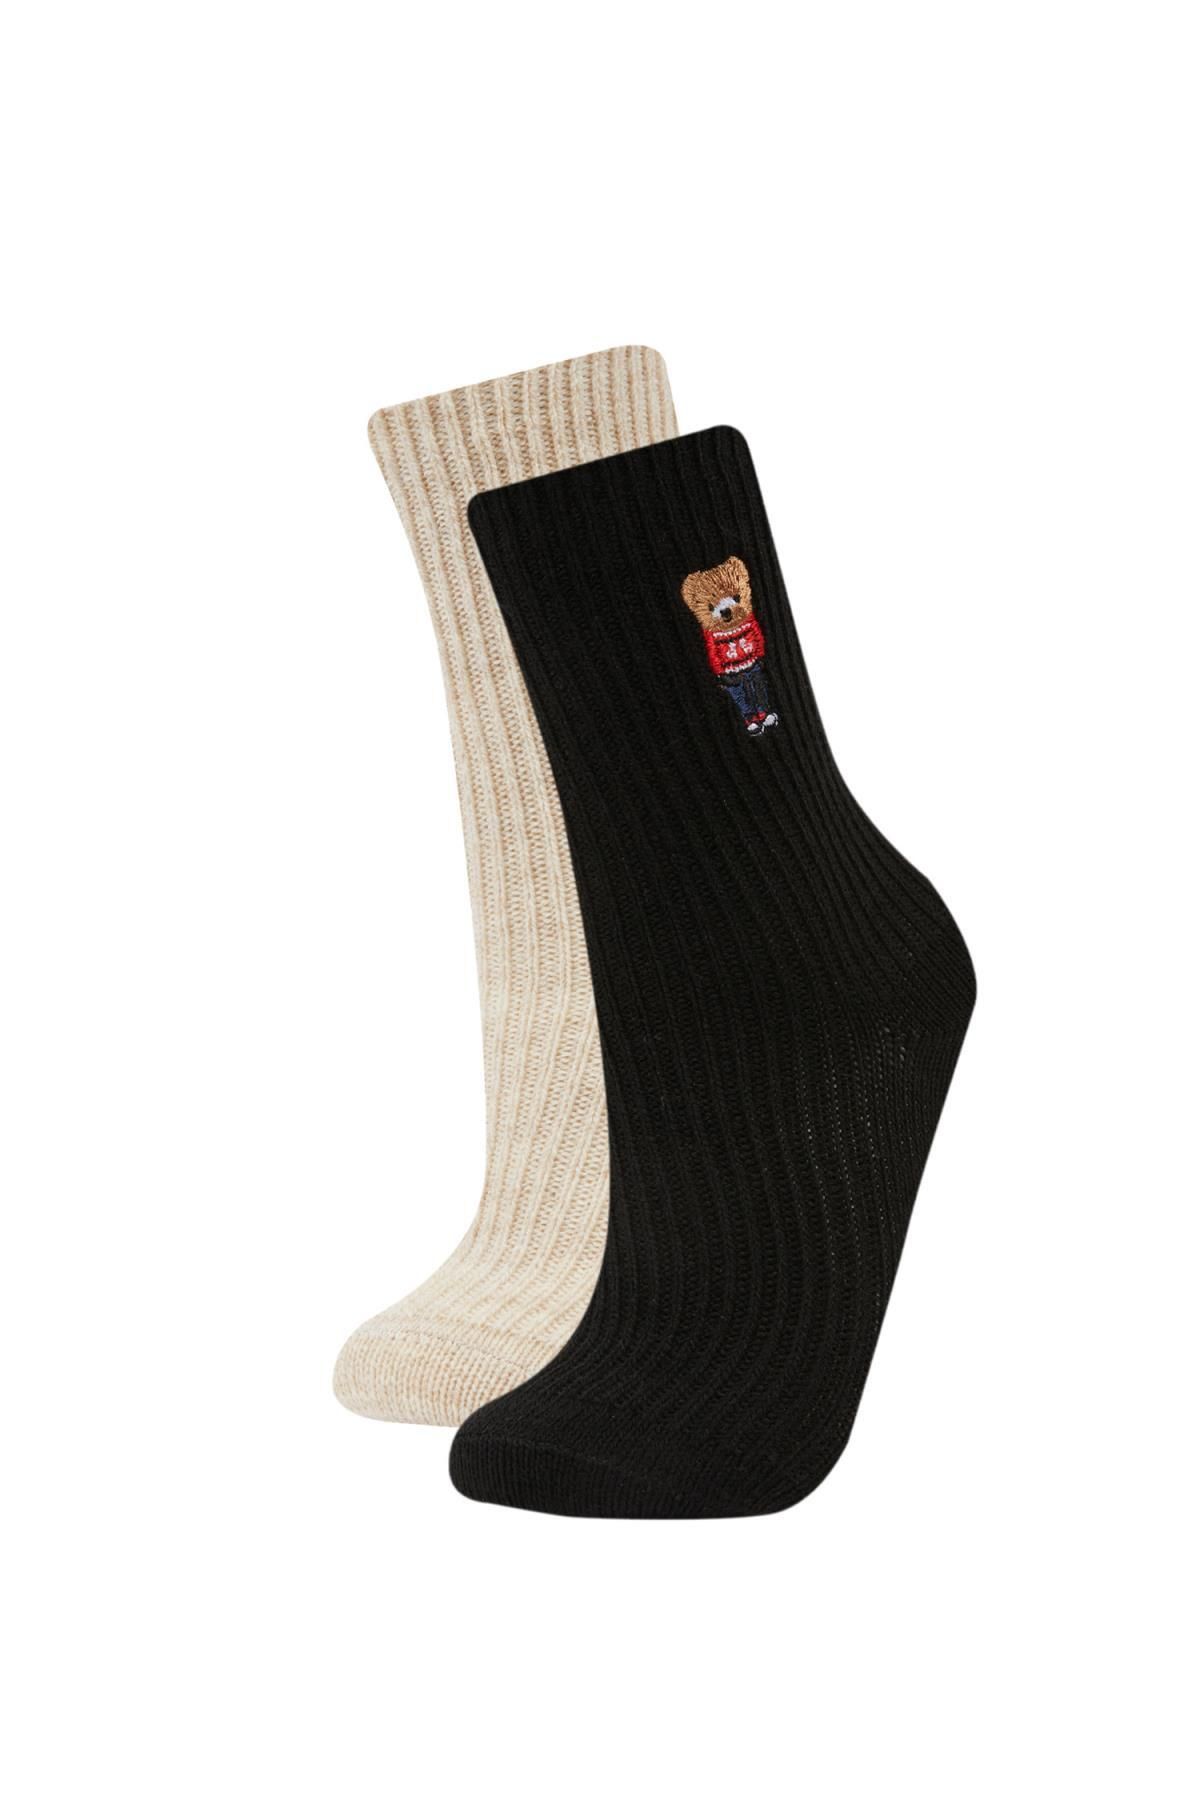 Defacto Kadın Nakış Ayıcık Desenli 2li Kışlık Çorap C5143axns